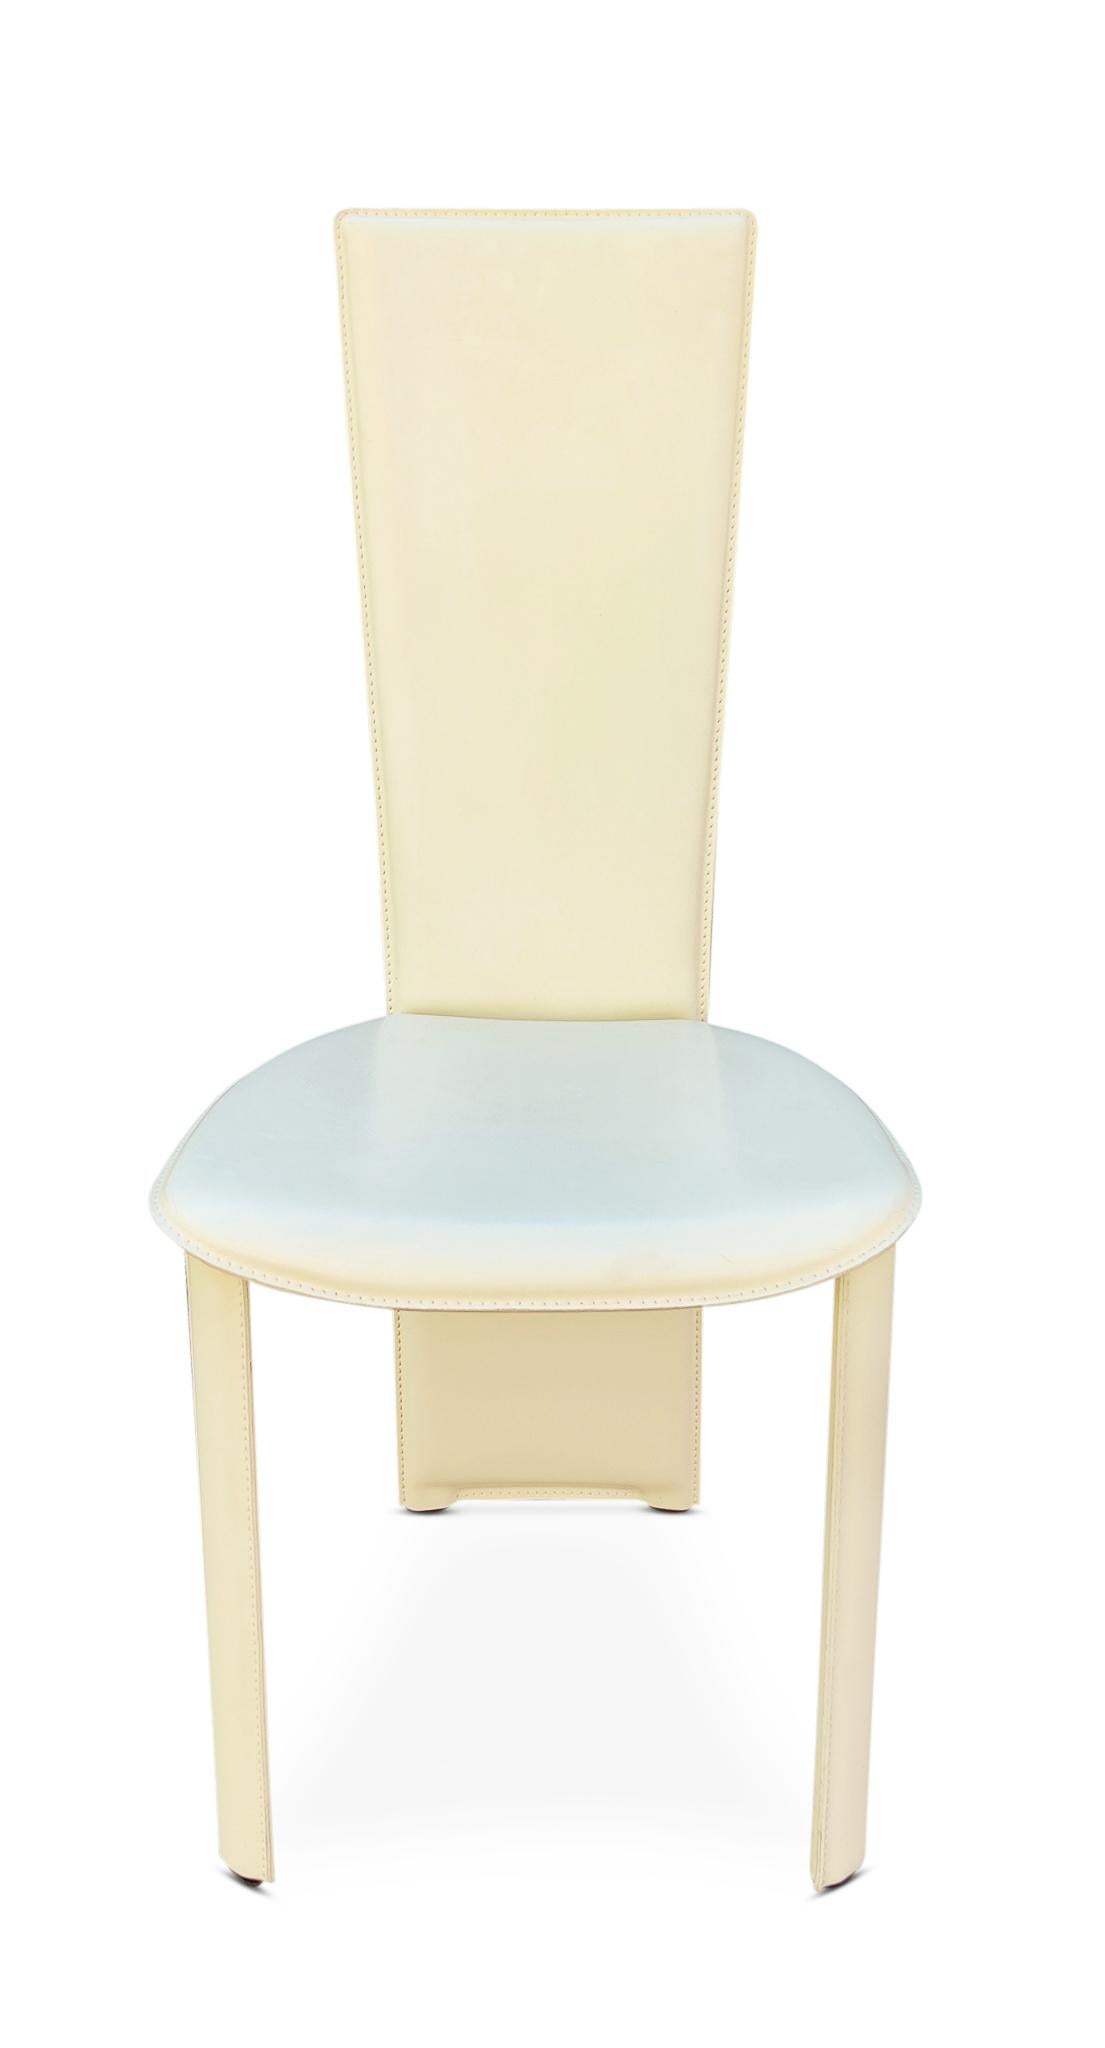 Un ensemble italien de quatre six (6) chaises d'appoint ou de salle à manger en cuir cousu blanc cassé par la société de design Frag. Fabriqué en Italie comme indiqué. 100% cuir. Le style est similaire à celui de la chaise 